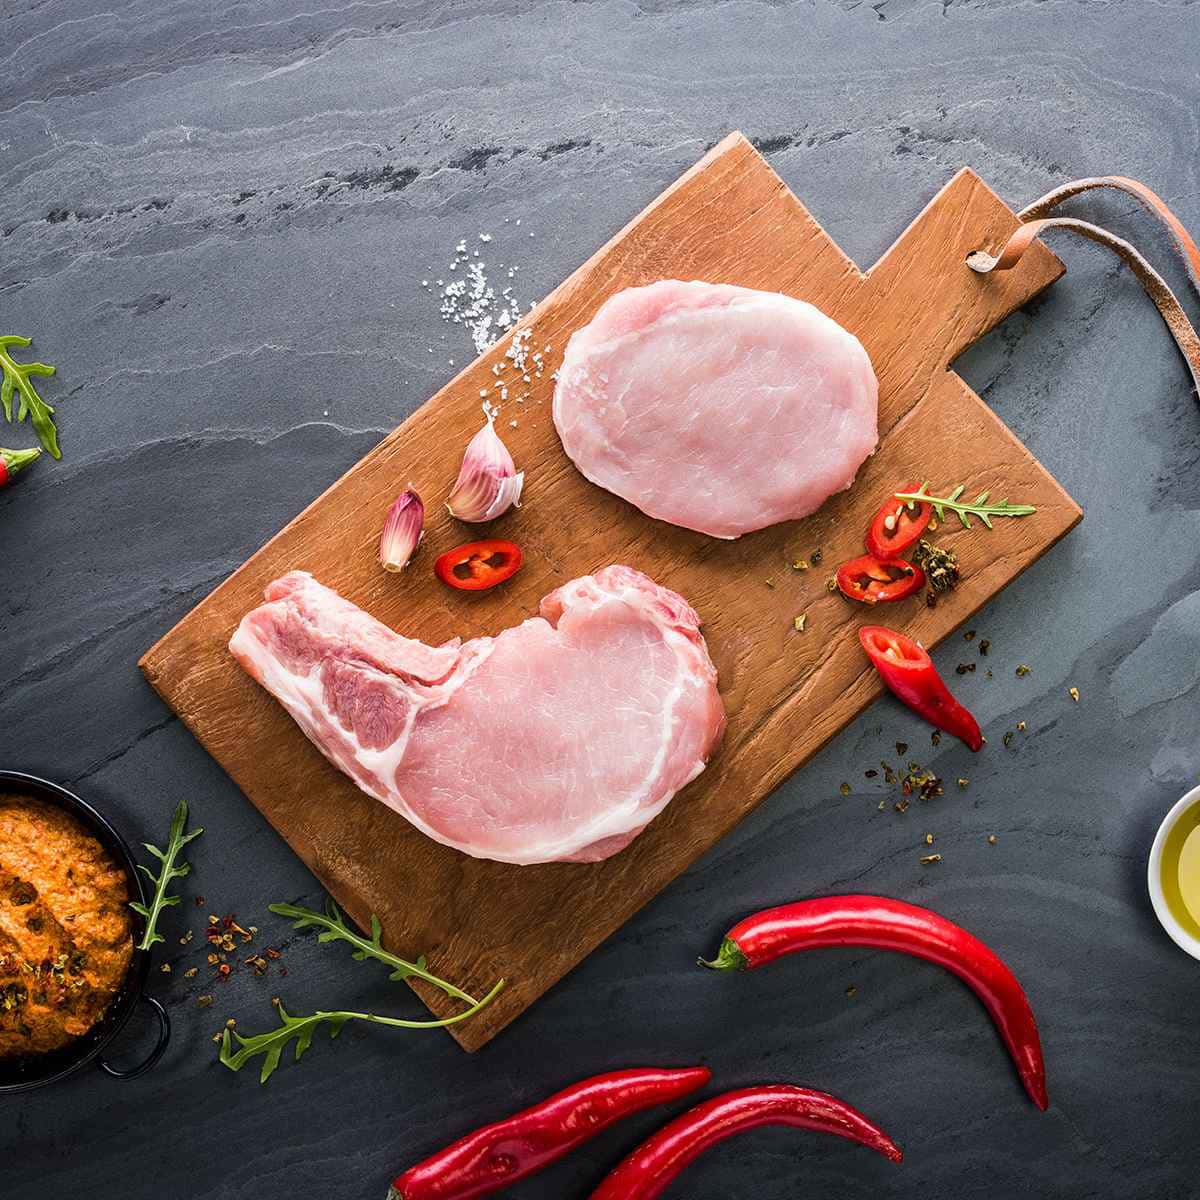 photographe culinaire viande mincerette cote